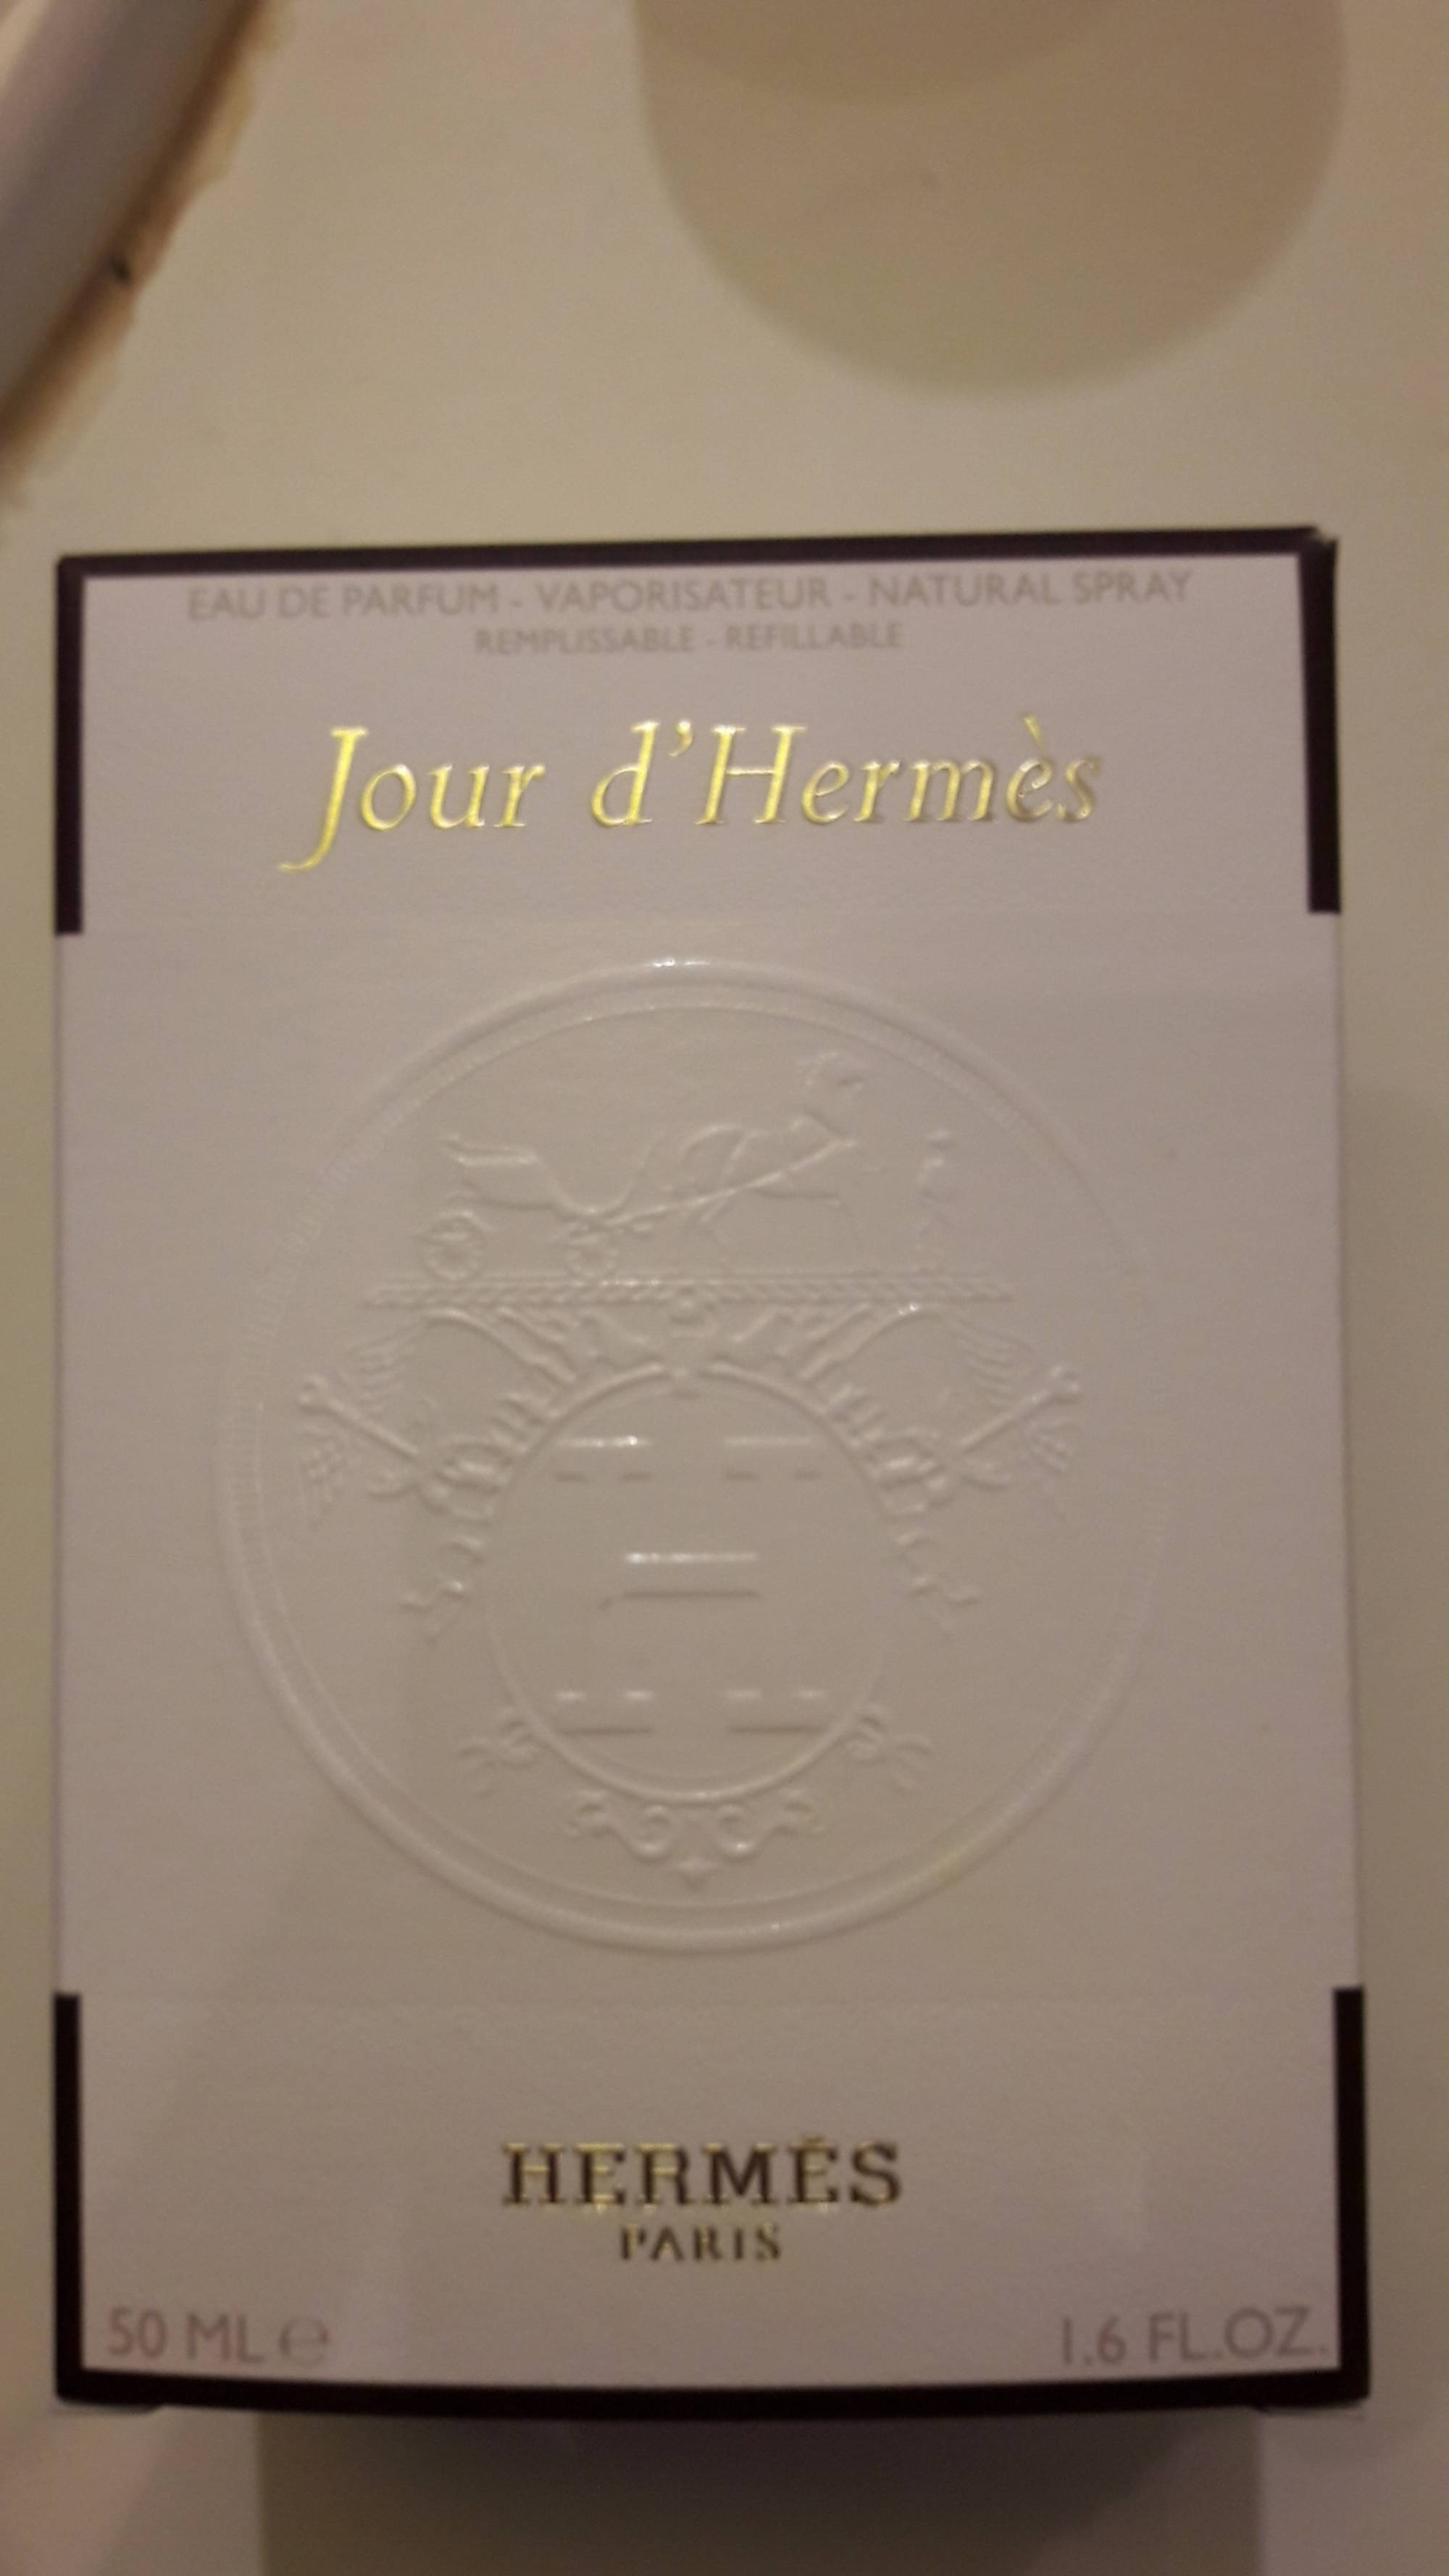 HERMES - Jour d'hermès - Eau de parfum vaporisateur